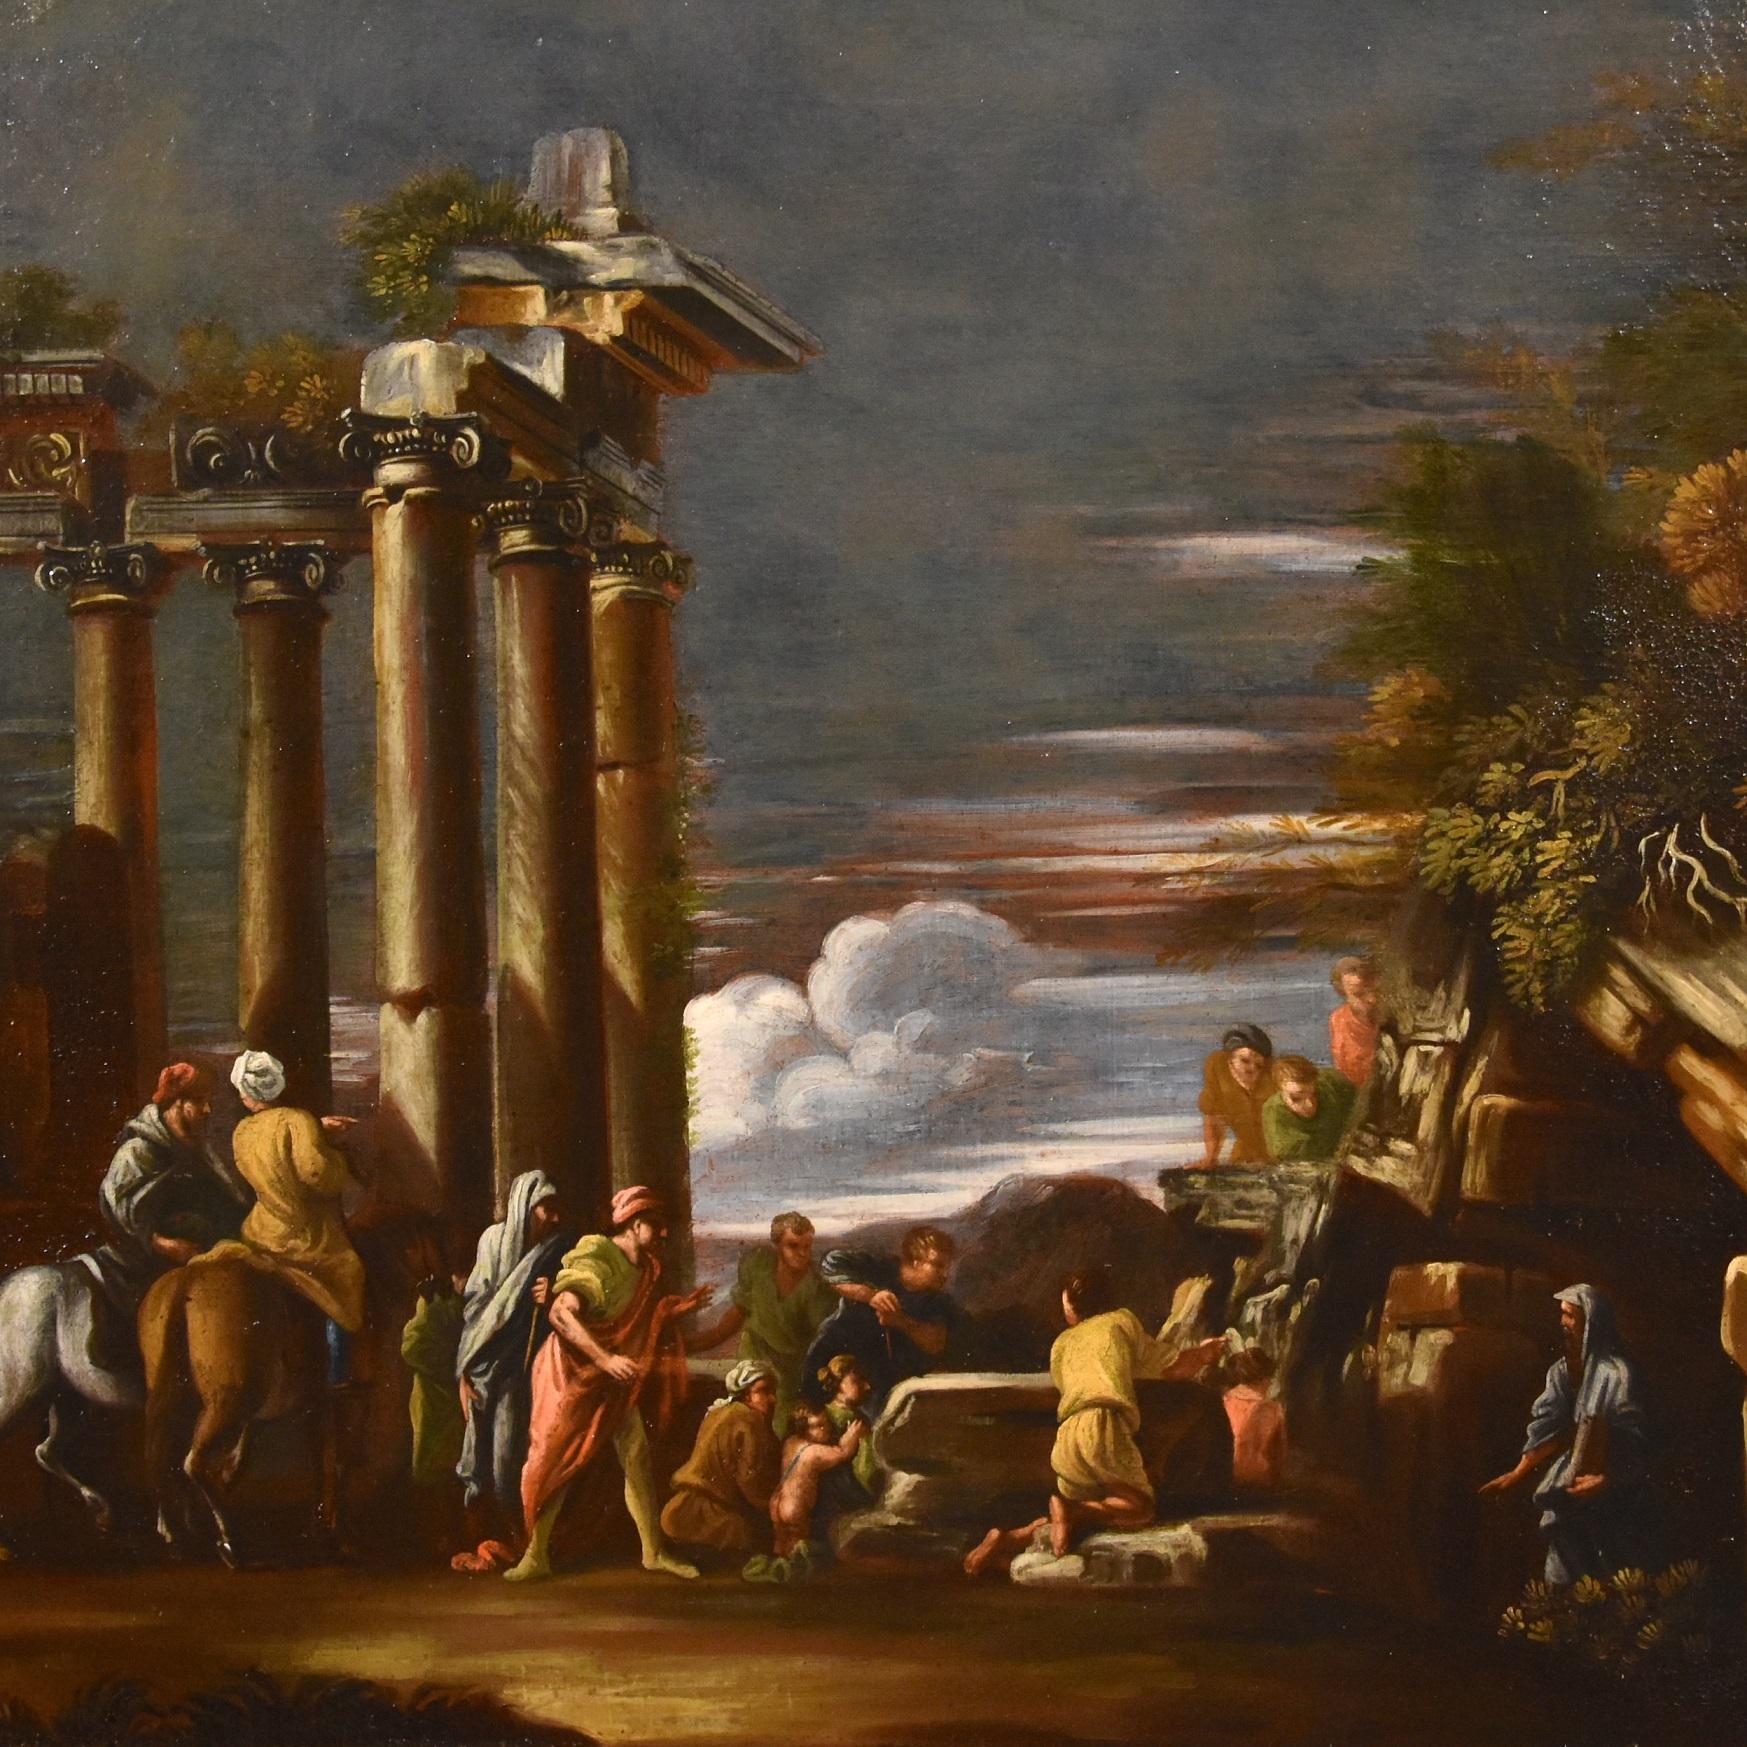 Giovani Ghisolfi (Milan 1623-1683), attribué / atelier
Vue de ruines architecturales classiques avec Pythagore faisant semblant de revenir de l'Hadès

Huile sur toile, cm. 70 x 84
Dans le cadre cm. 86 x 100

Le tableau en question, représentant un